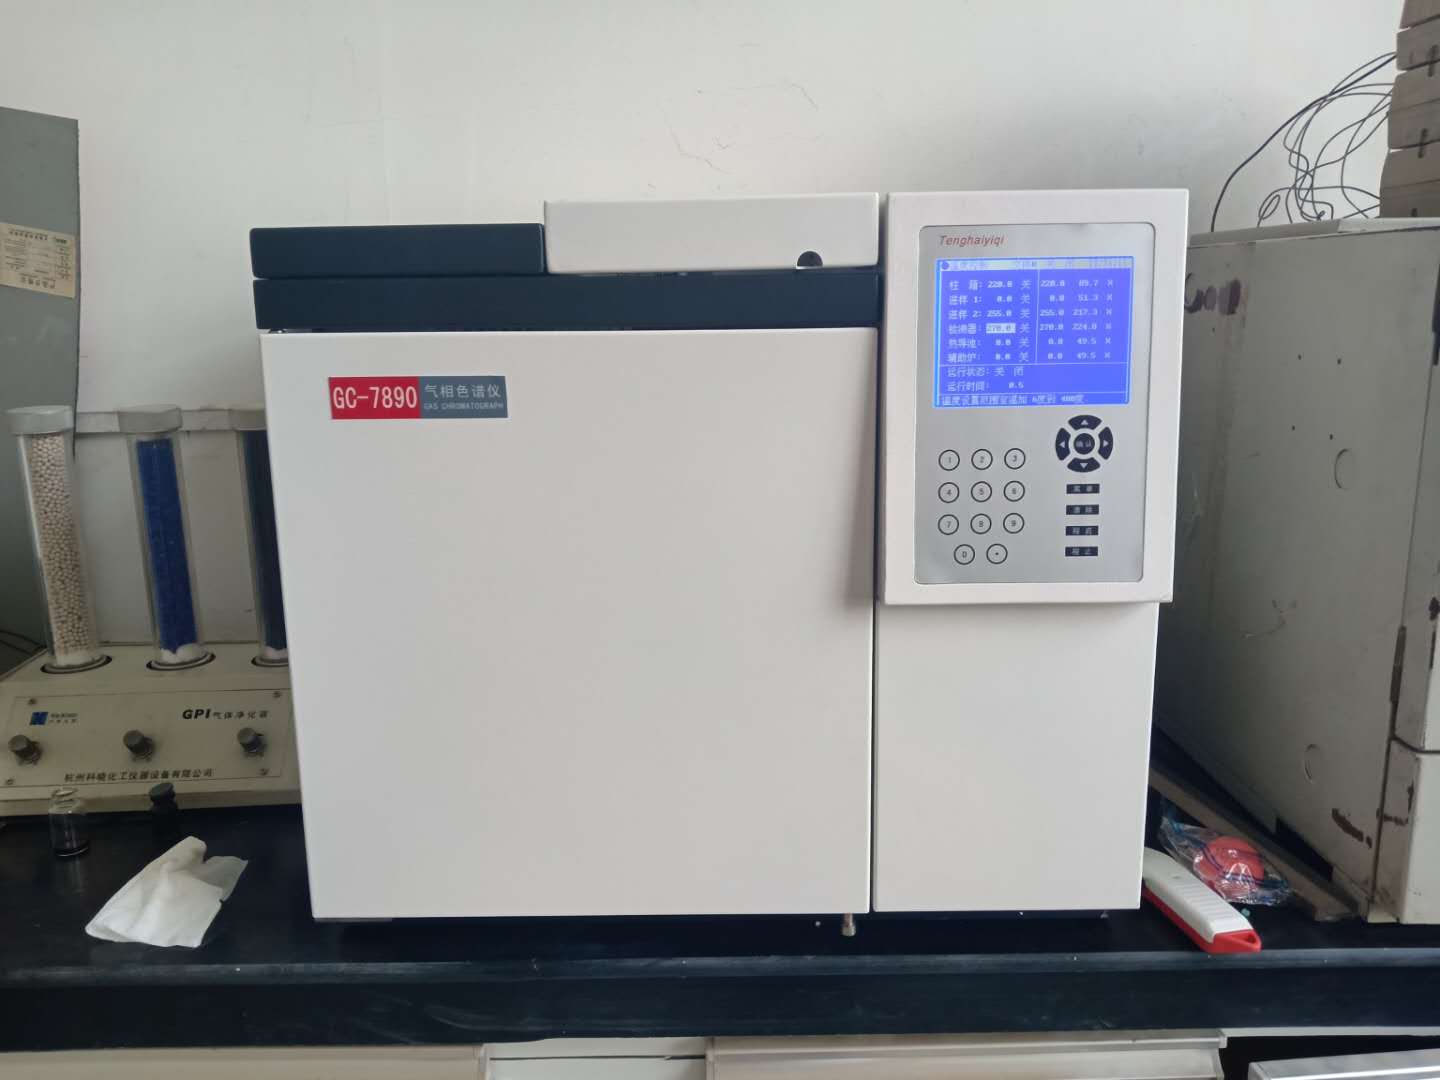 菏泽化工厂GC-7890气相色谱仪分析食品添加剂安装调试验收完成